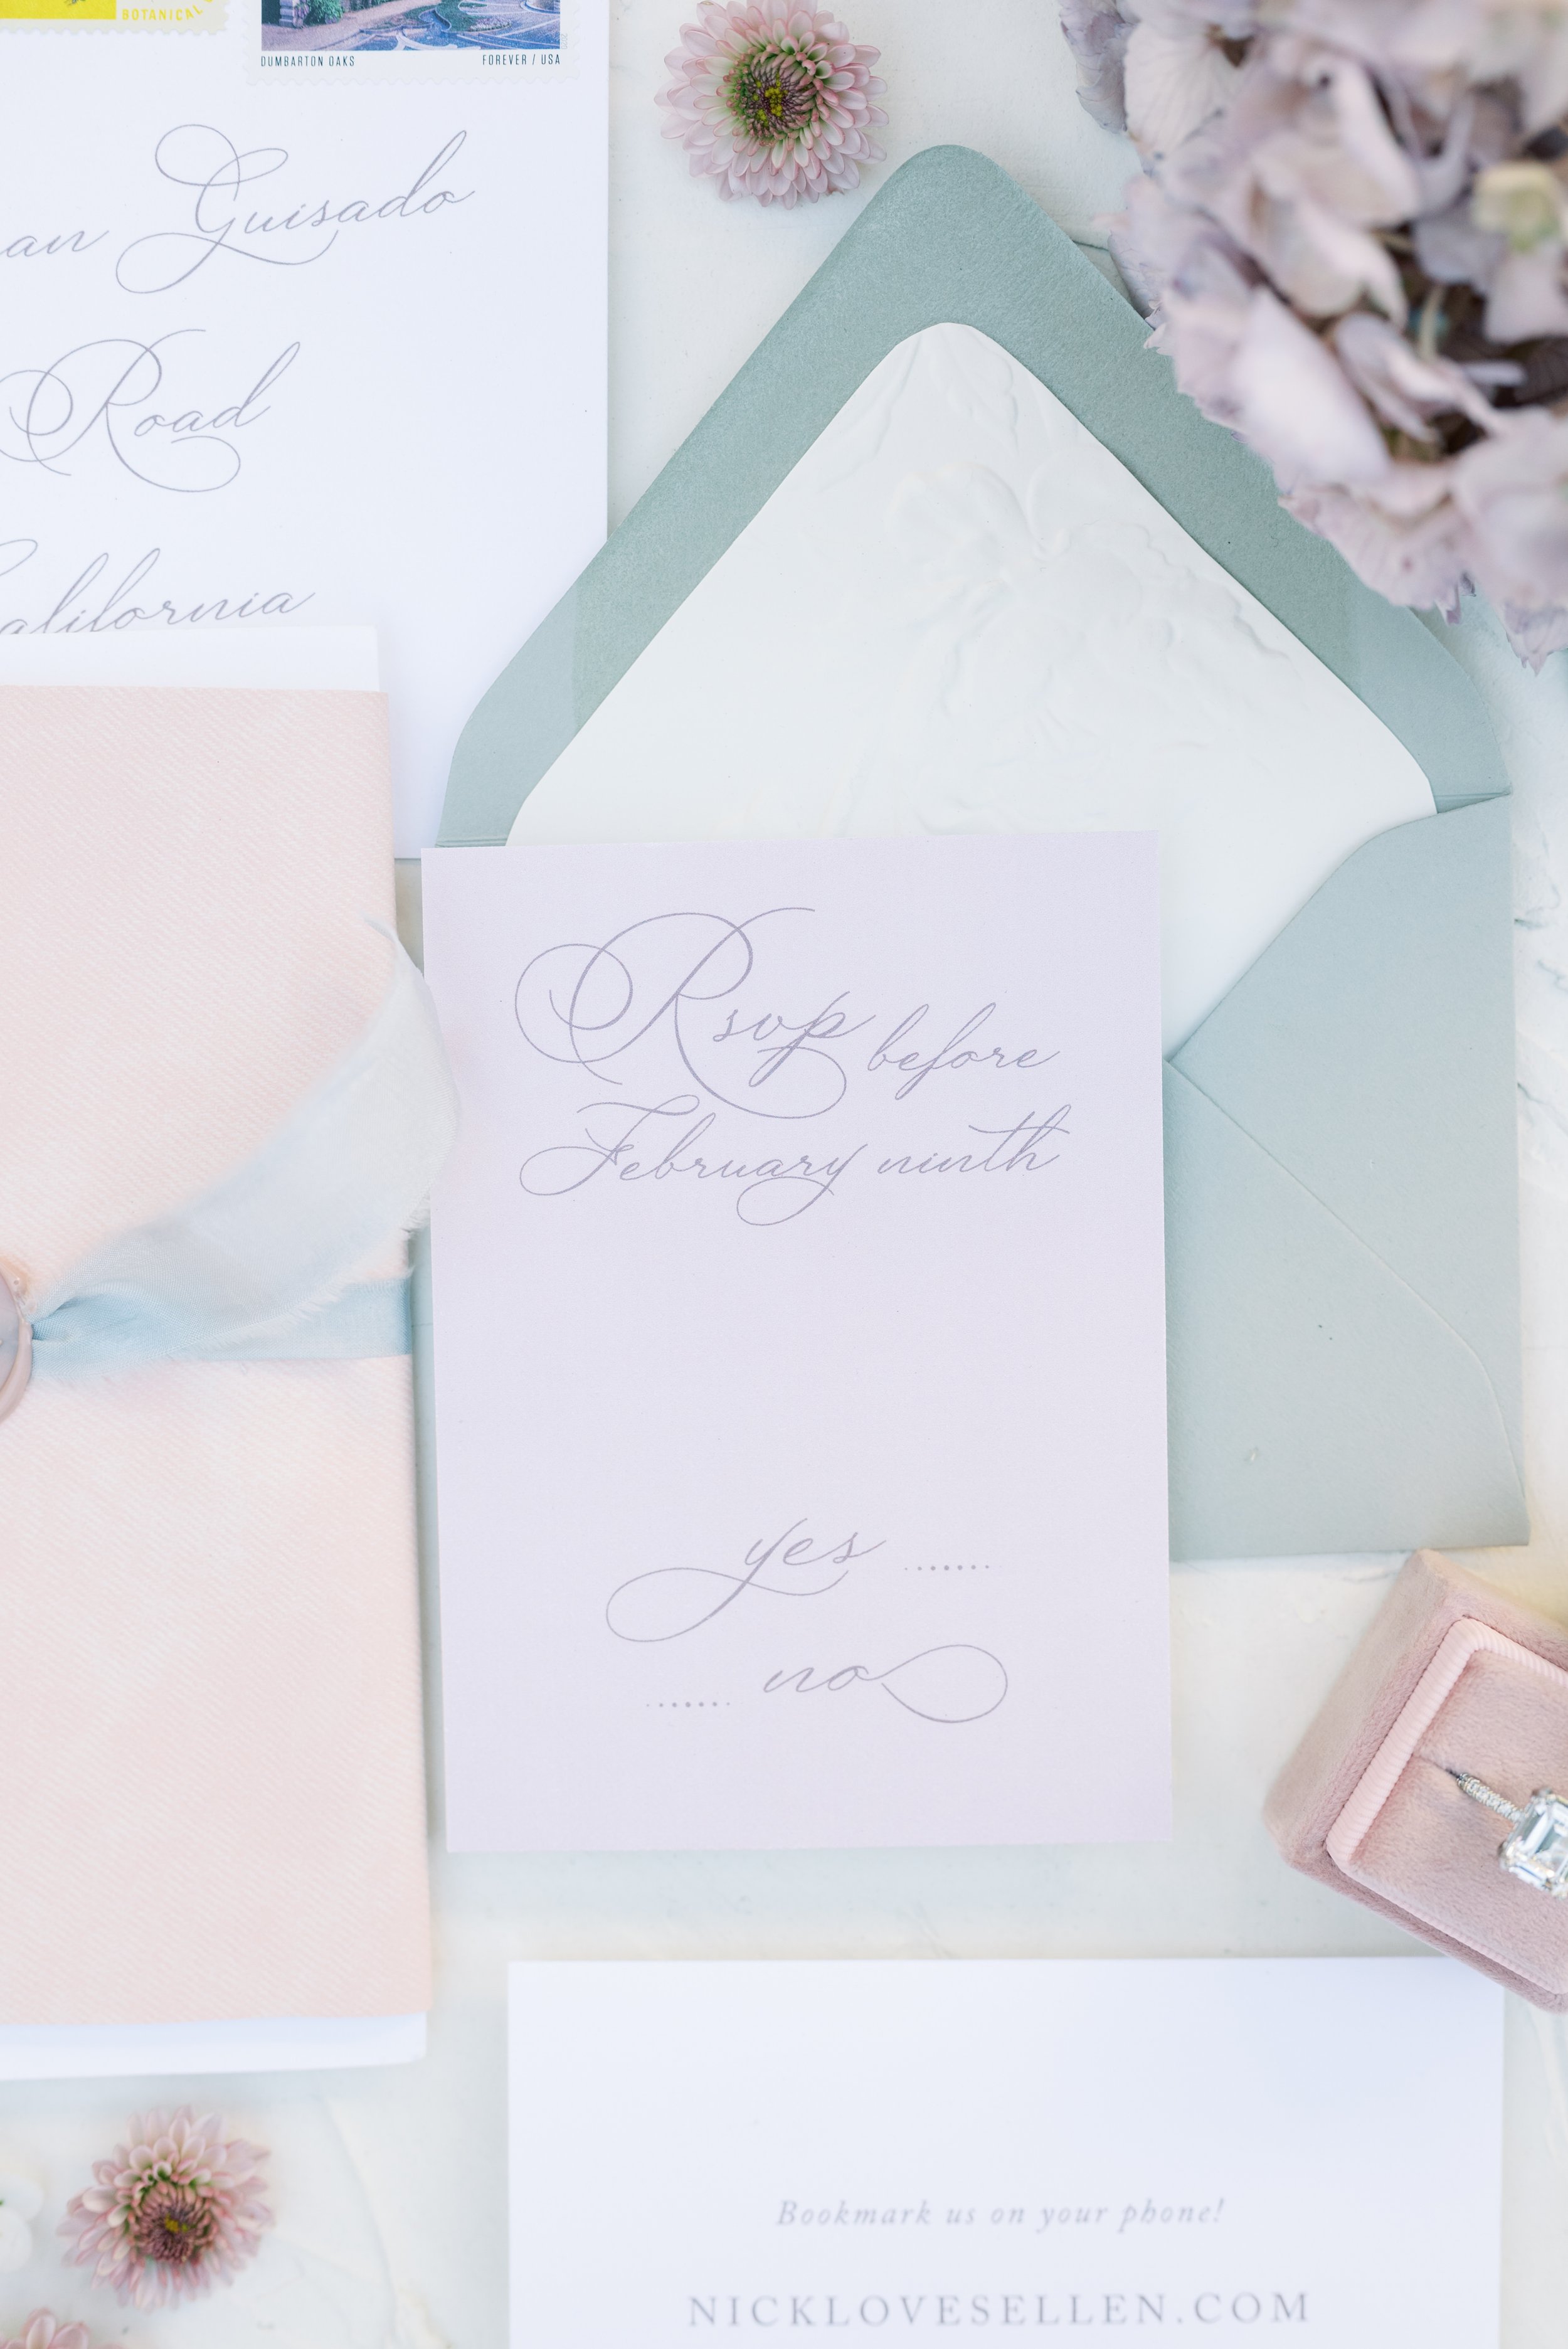 Should I do online rsvp's for my wedding? – Roseville Designs